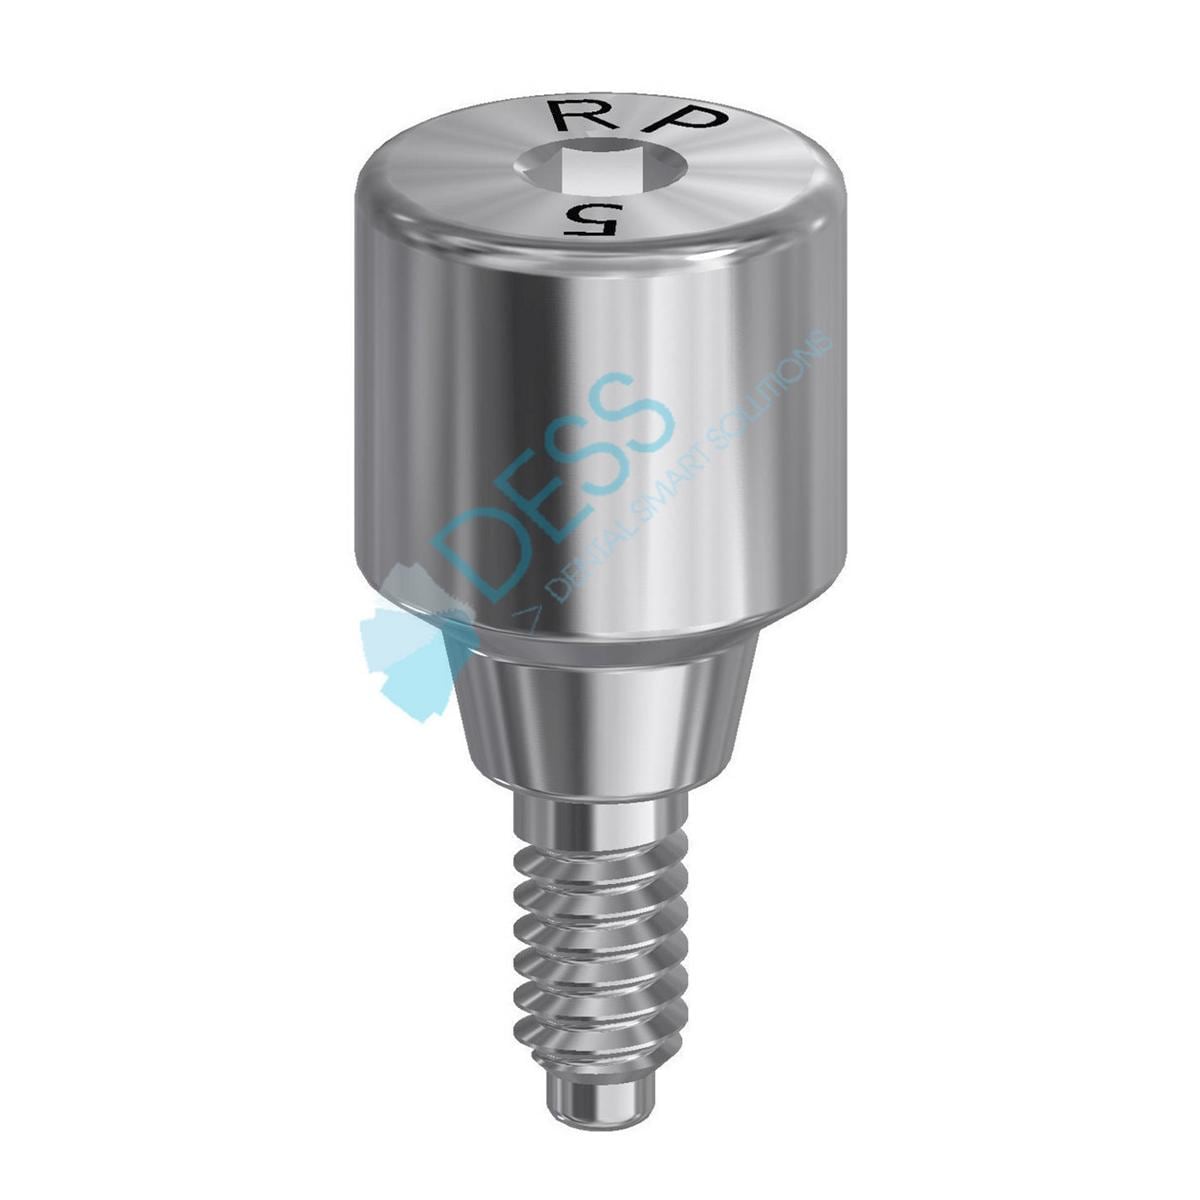 Gingivaformer - kompatibel mit Astra Tech™ Osseospeed™ - Aqua (RP) Ø 3,5 - 4,0 mm, Höhe 5,0 mm